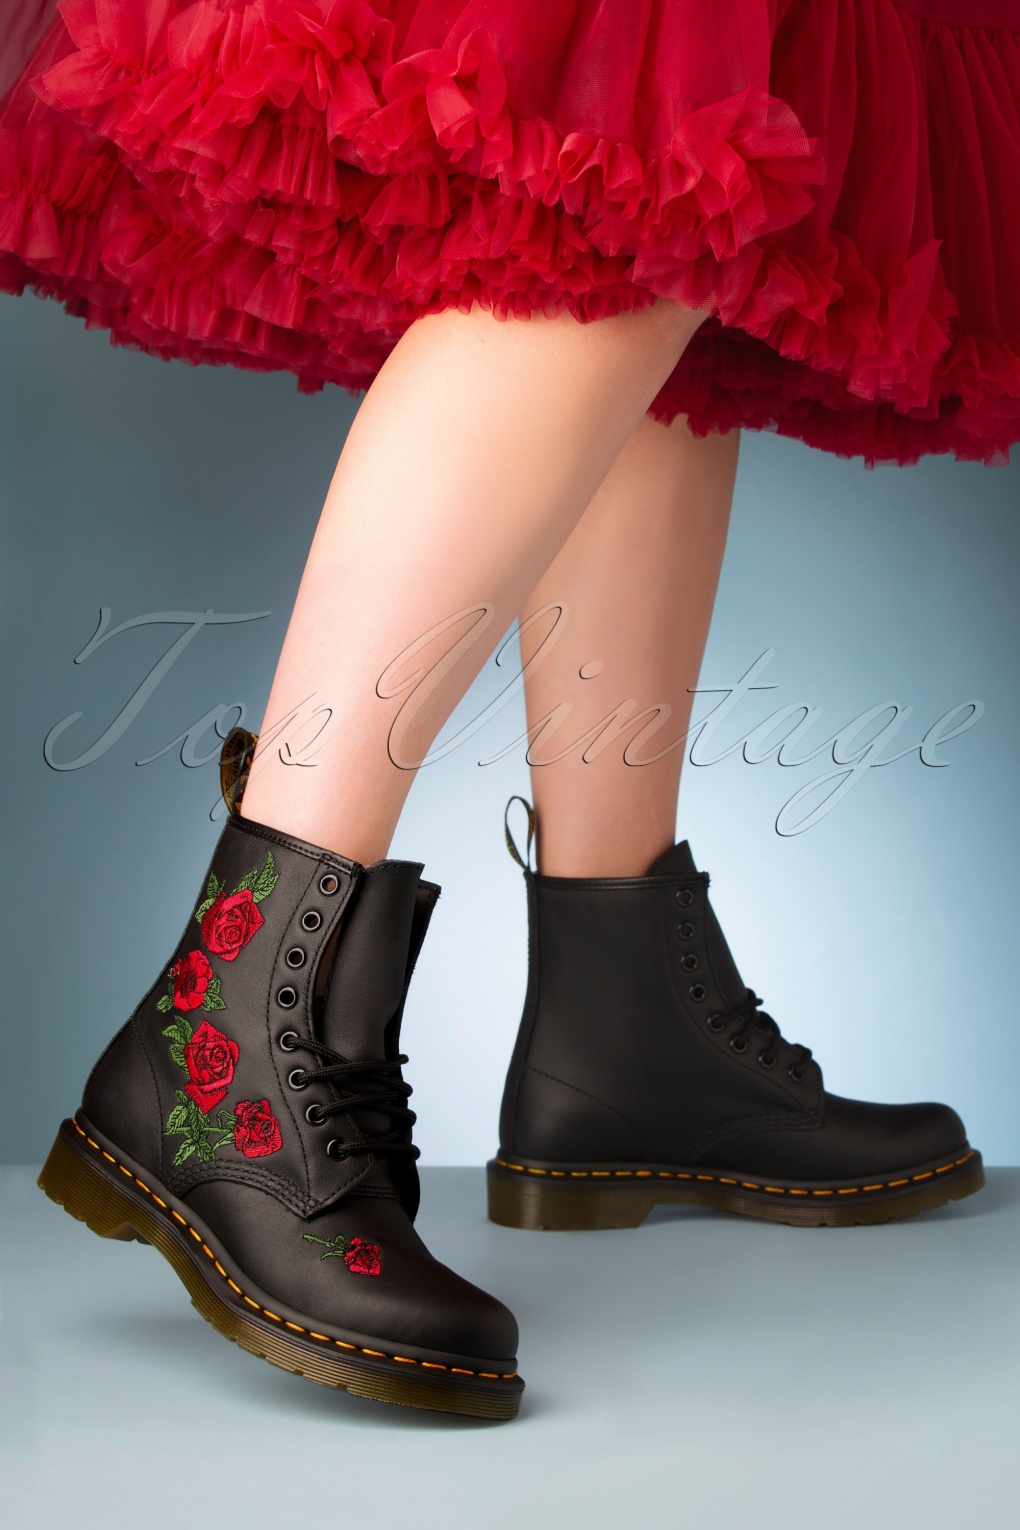 1460 Vonda Softie Red Floral Boots in